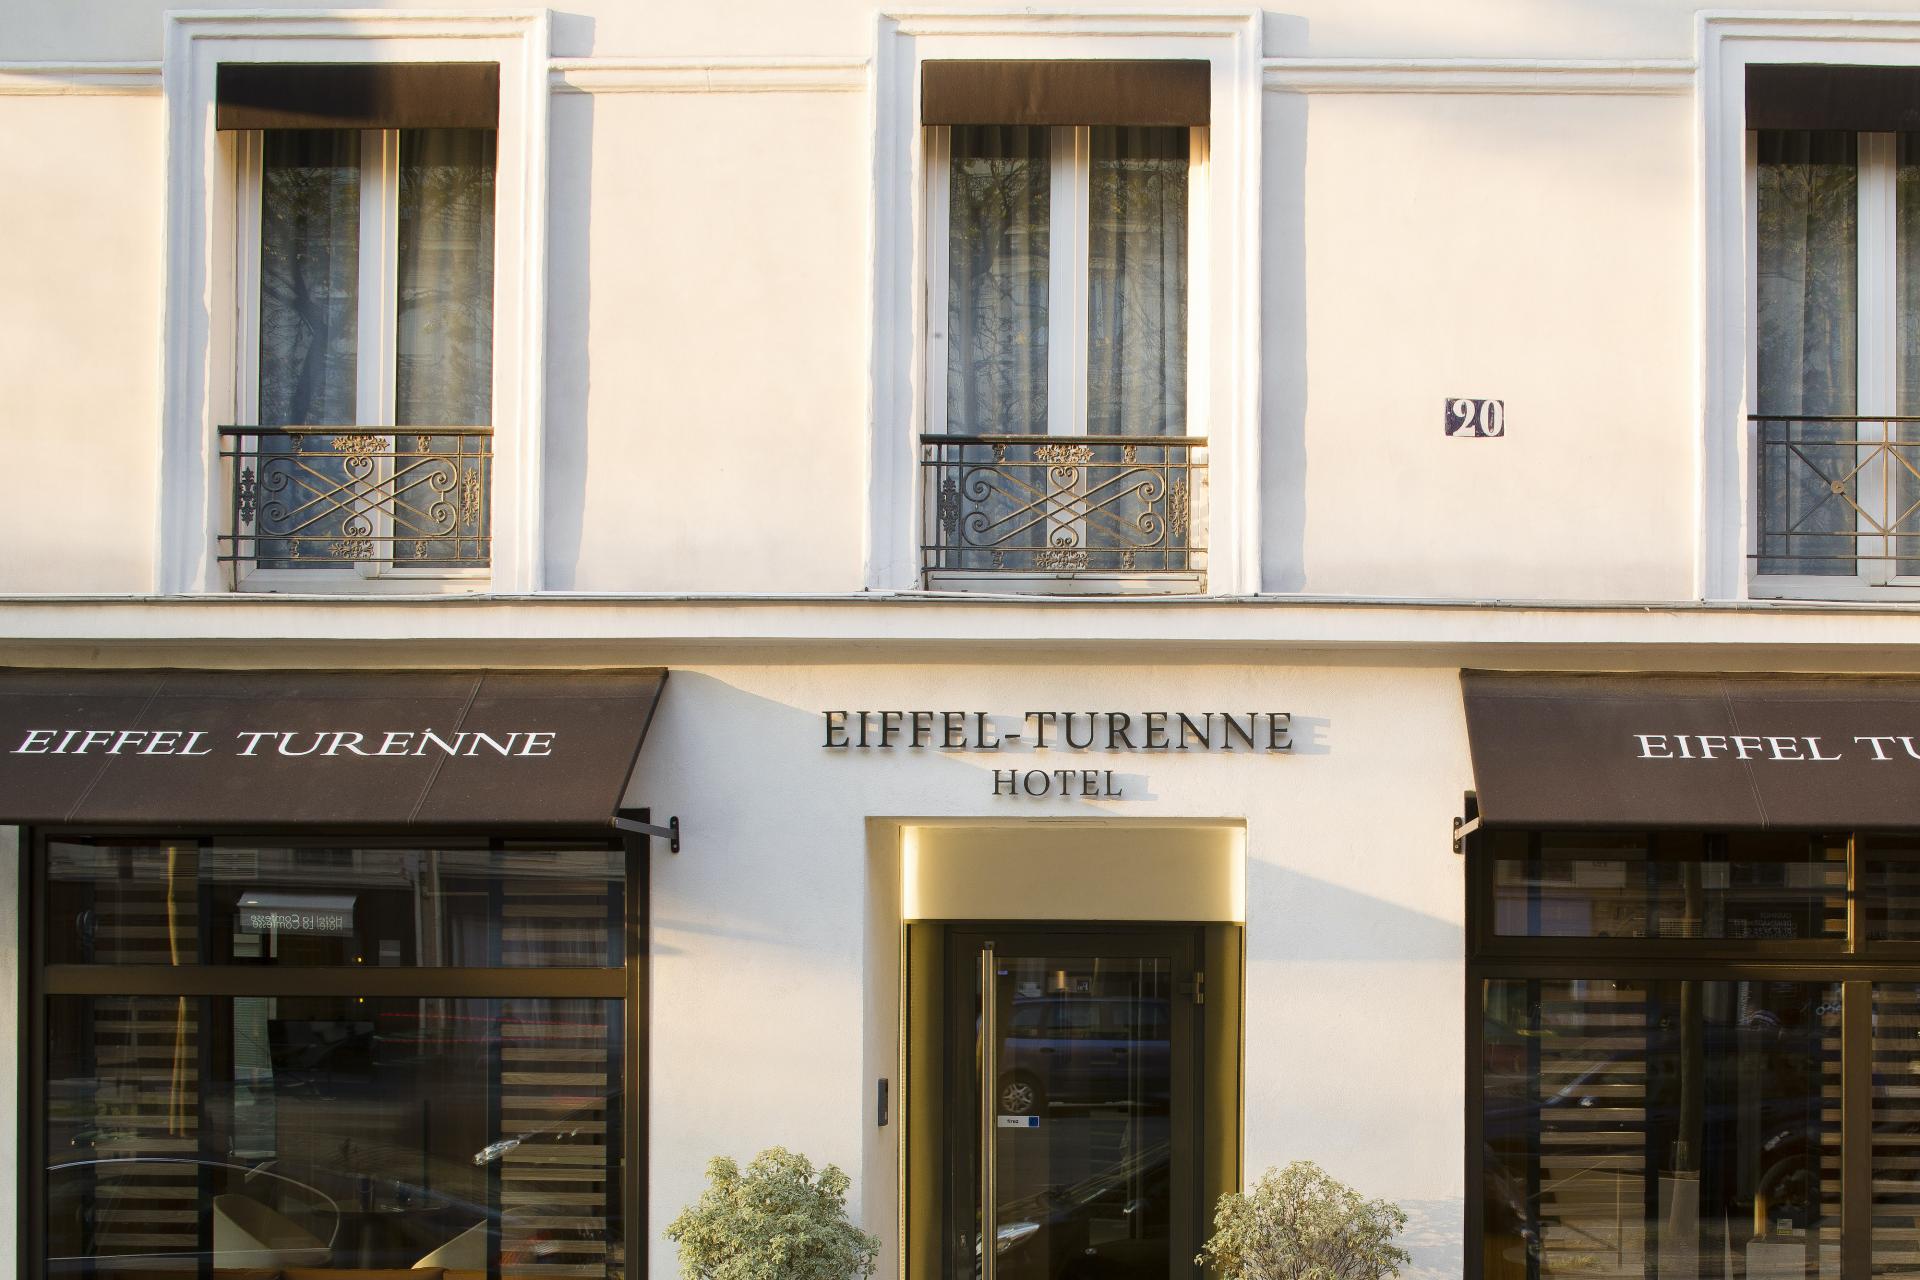 Hotel Eiffel Turenne - Façade